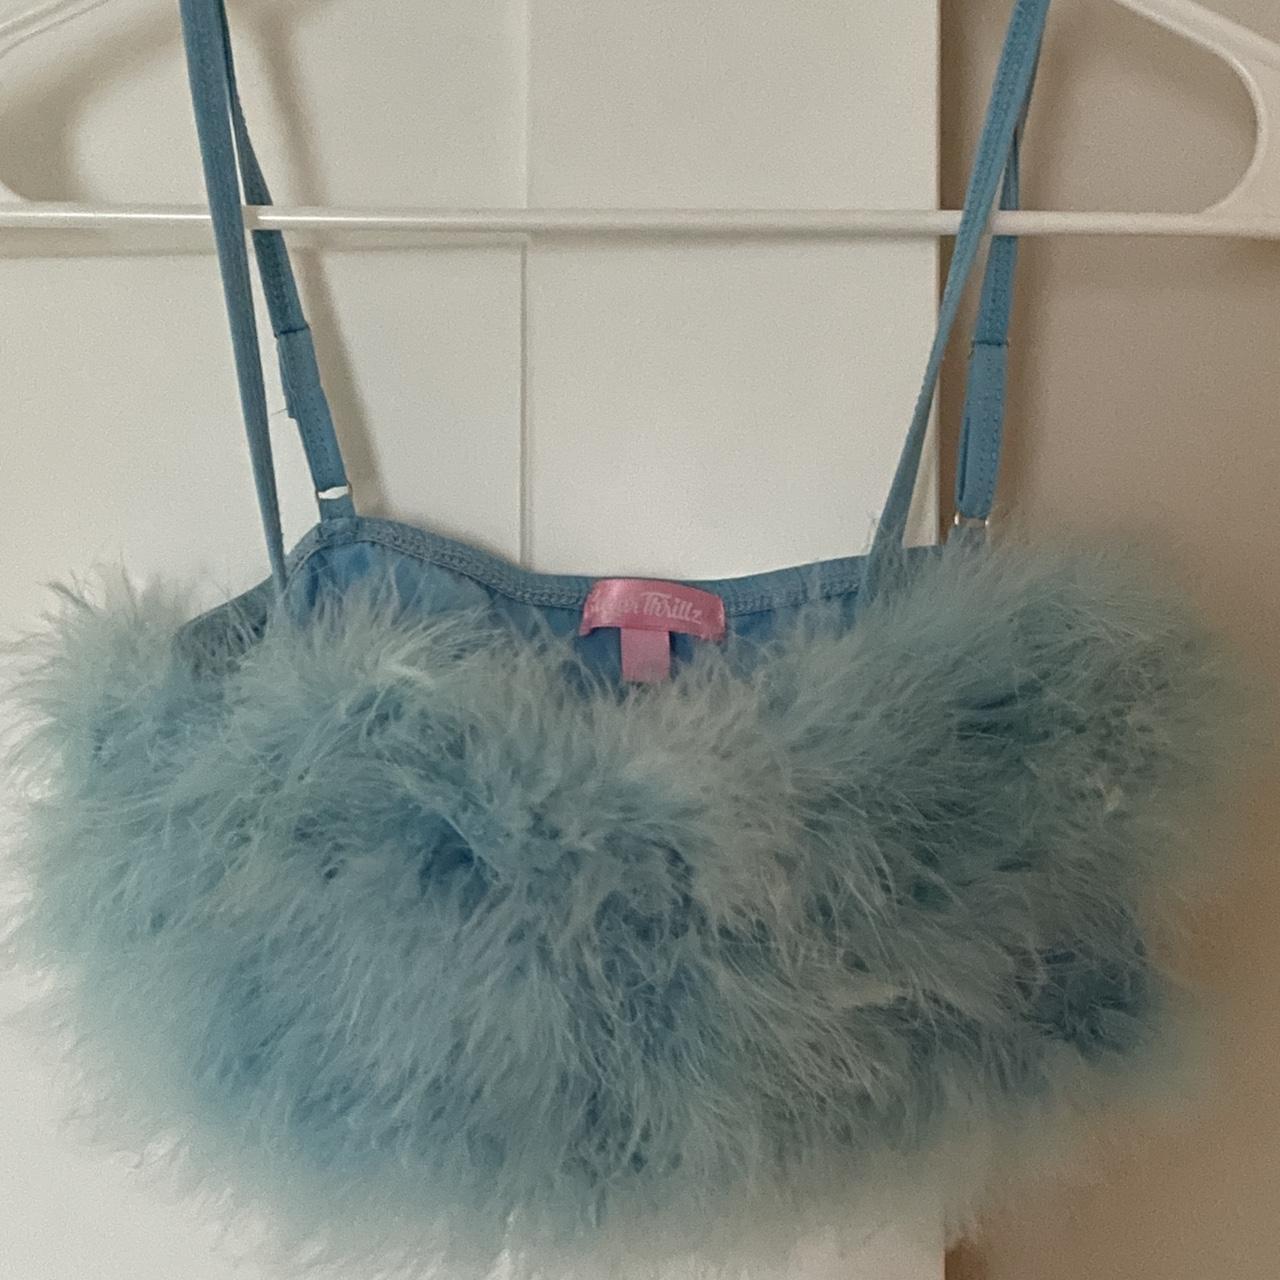 Sugar Thrillz fluffy blue bra top from Dolls Kill, - Depop